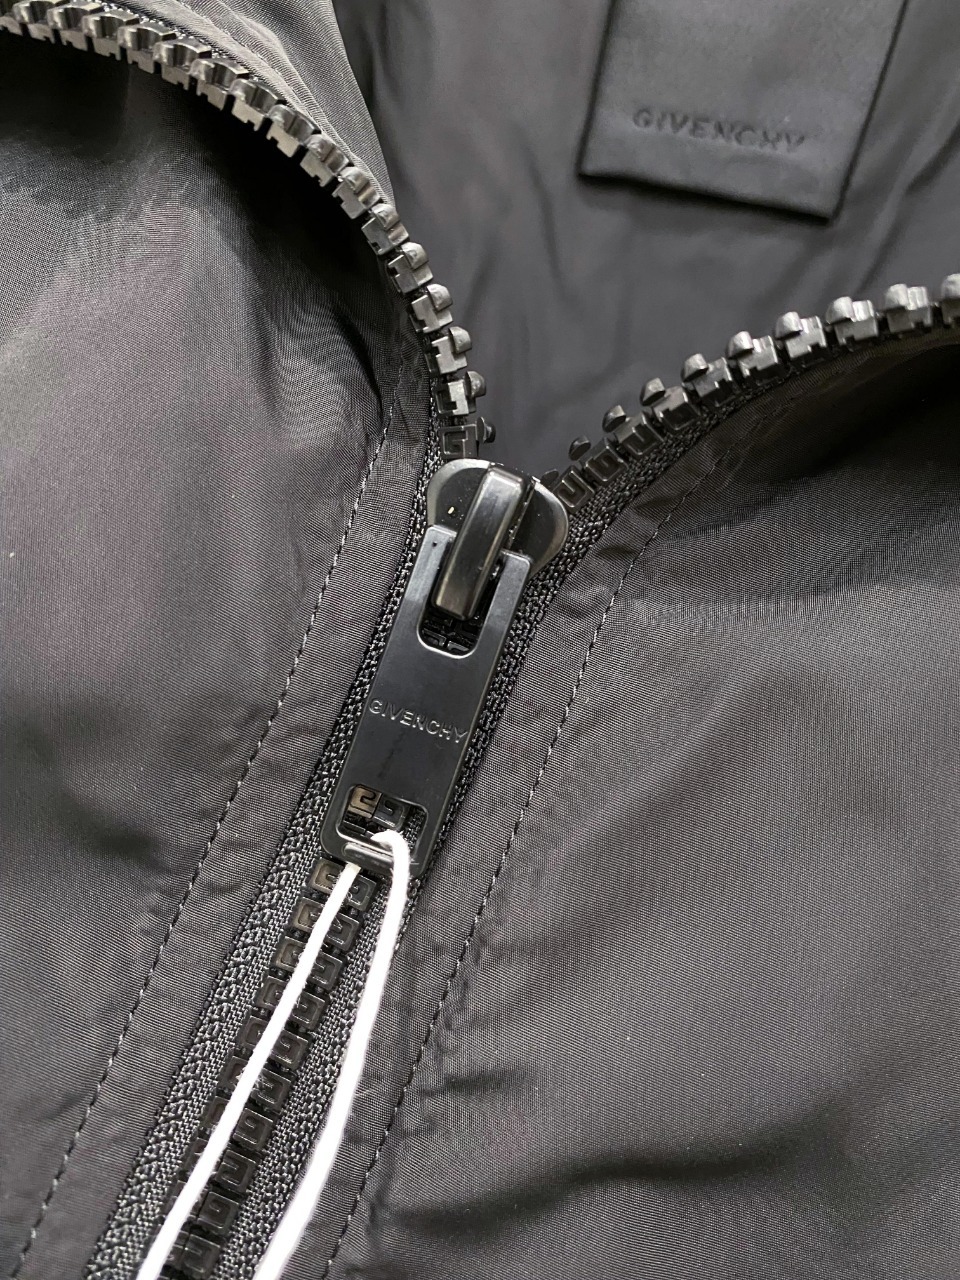 新款纪梵希夹克外套穿搭随意切换风格简单又时髦！高端定制复合布面料手感比以往做的要柔软的多舒适度高原厂五金